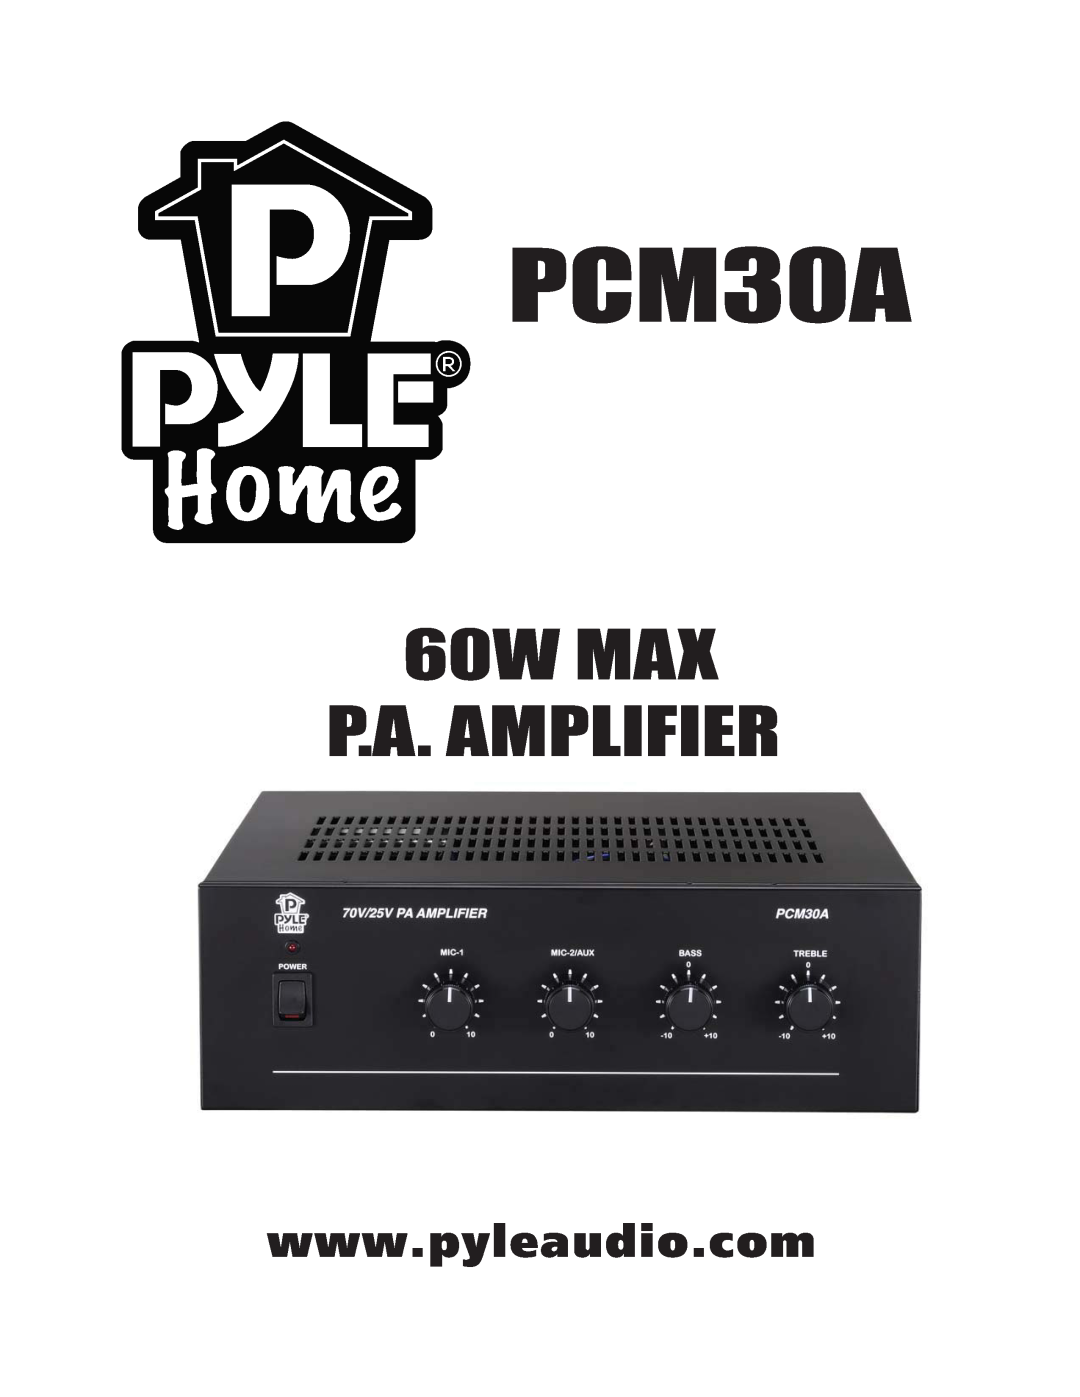 PYLE Audio PCM30A manual 60W MAX P.A. AMPLIFIER 